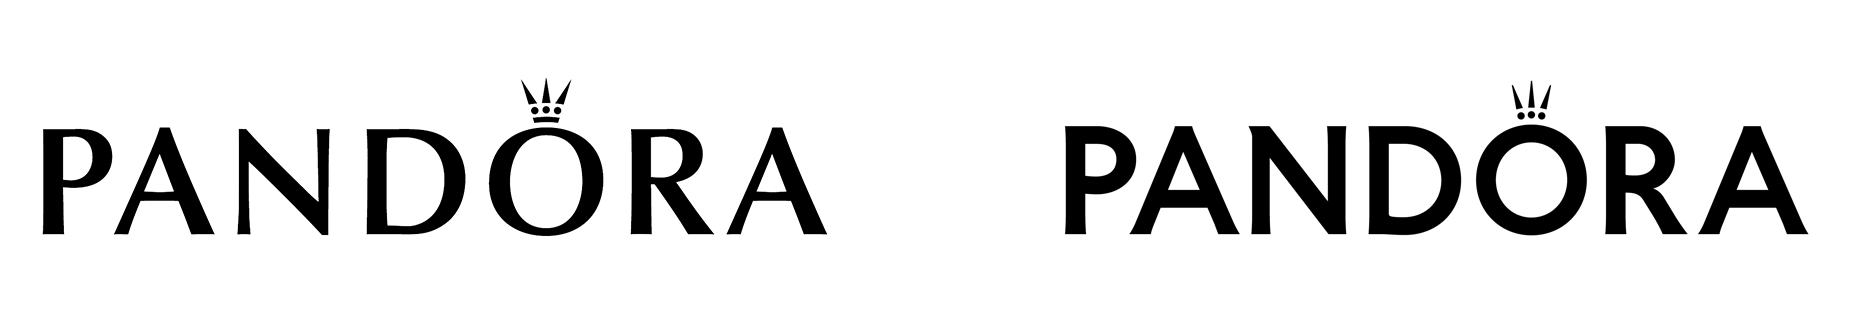 Изменение логотипа Pandora